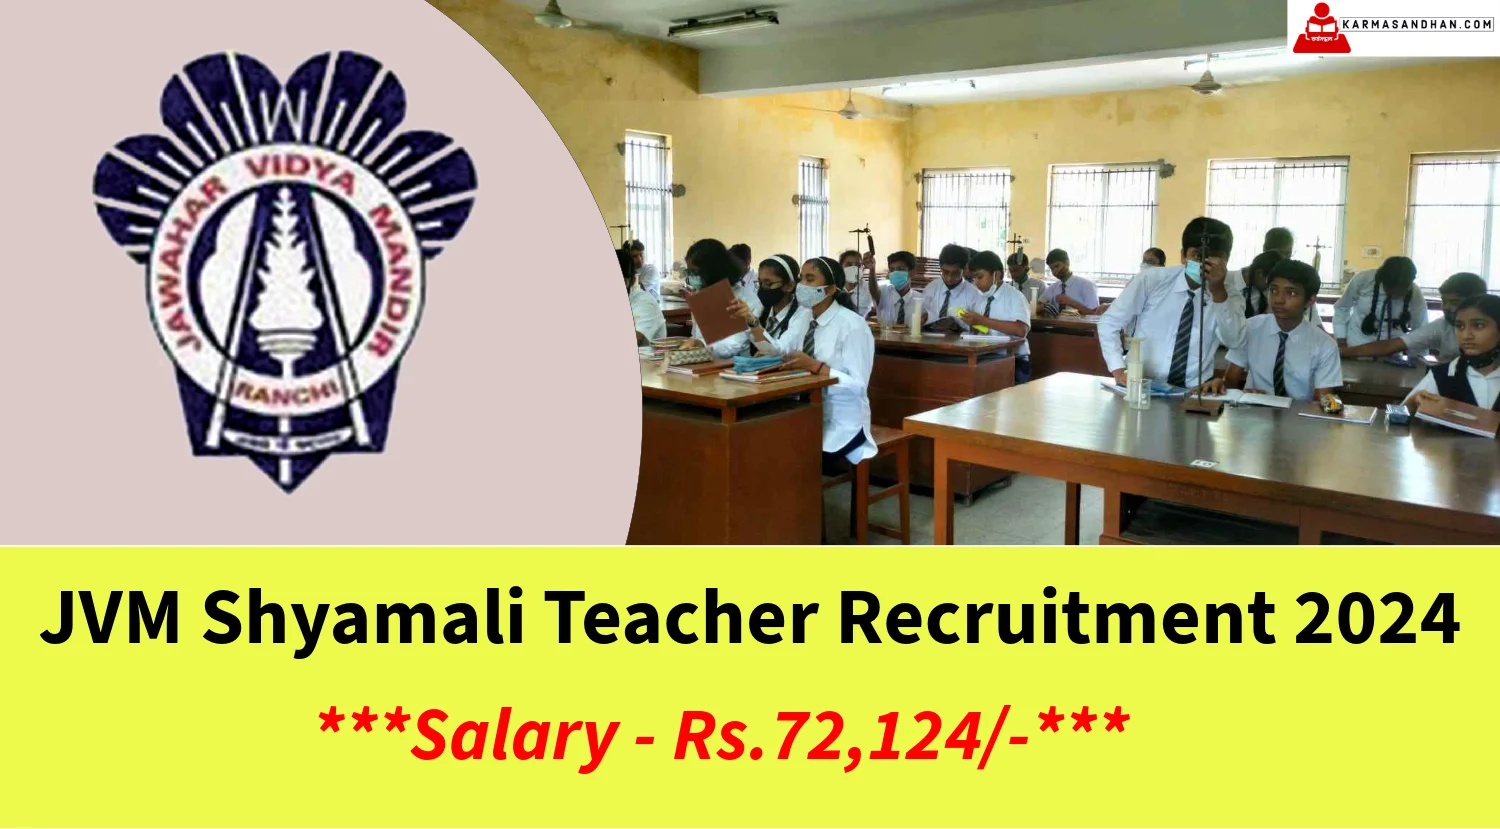 JVM Shyamali Teacher Recruitment 2024 Notification out